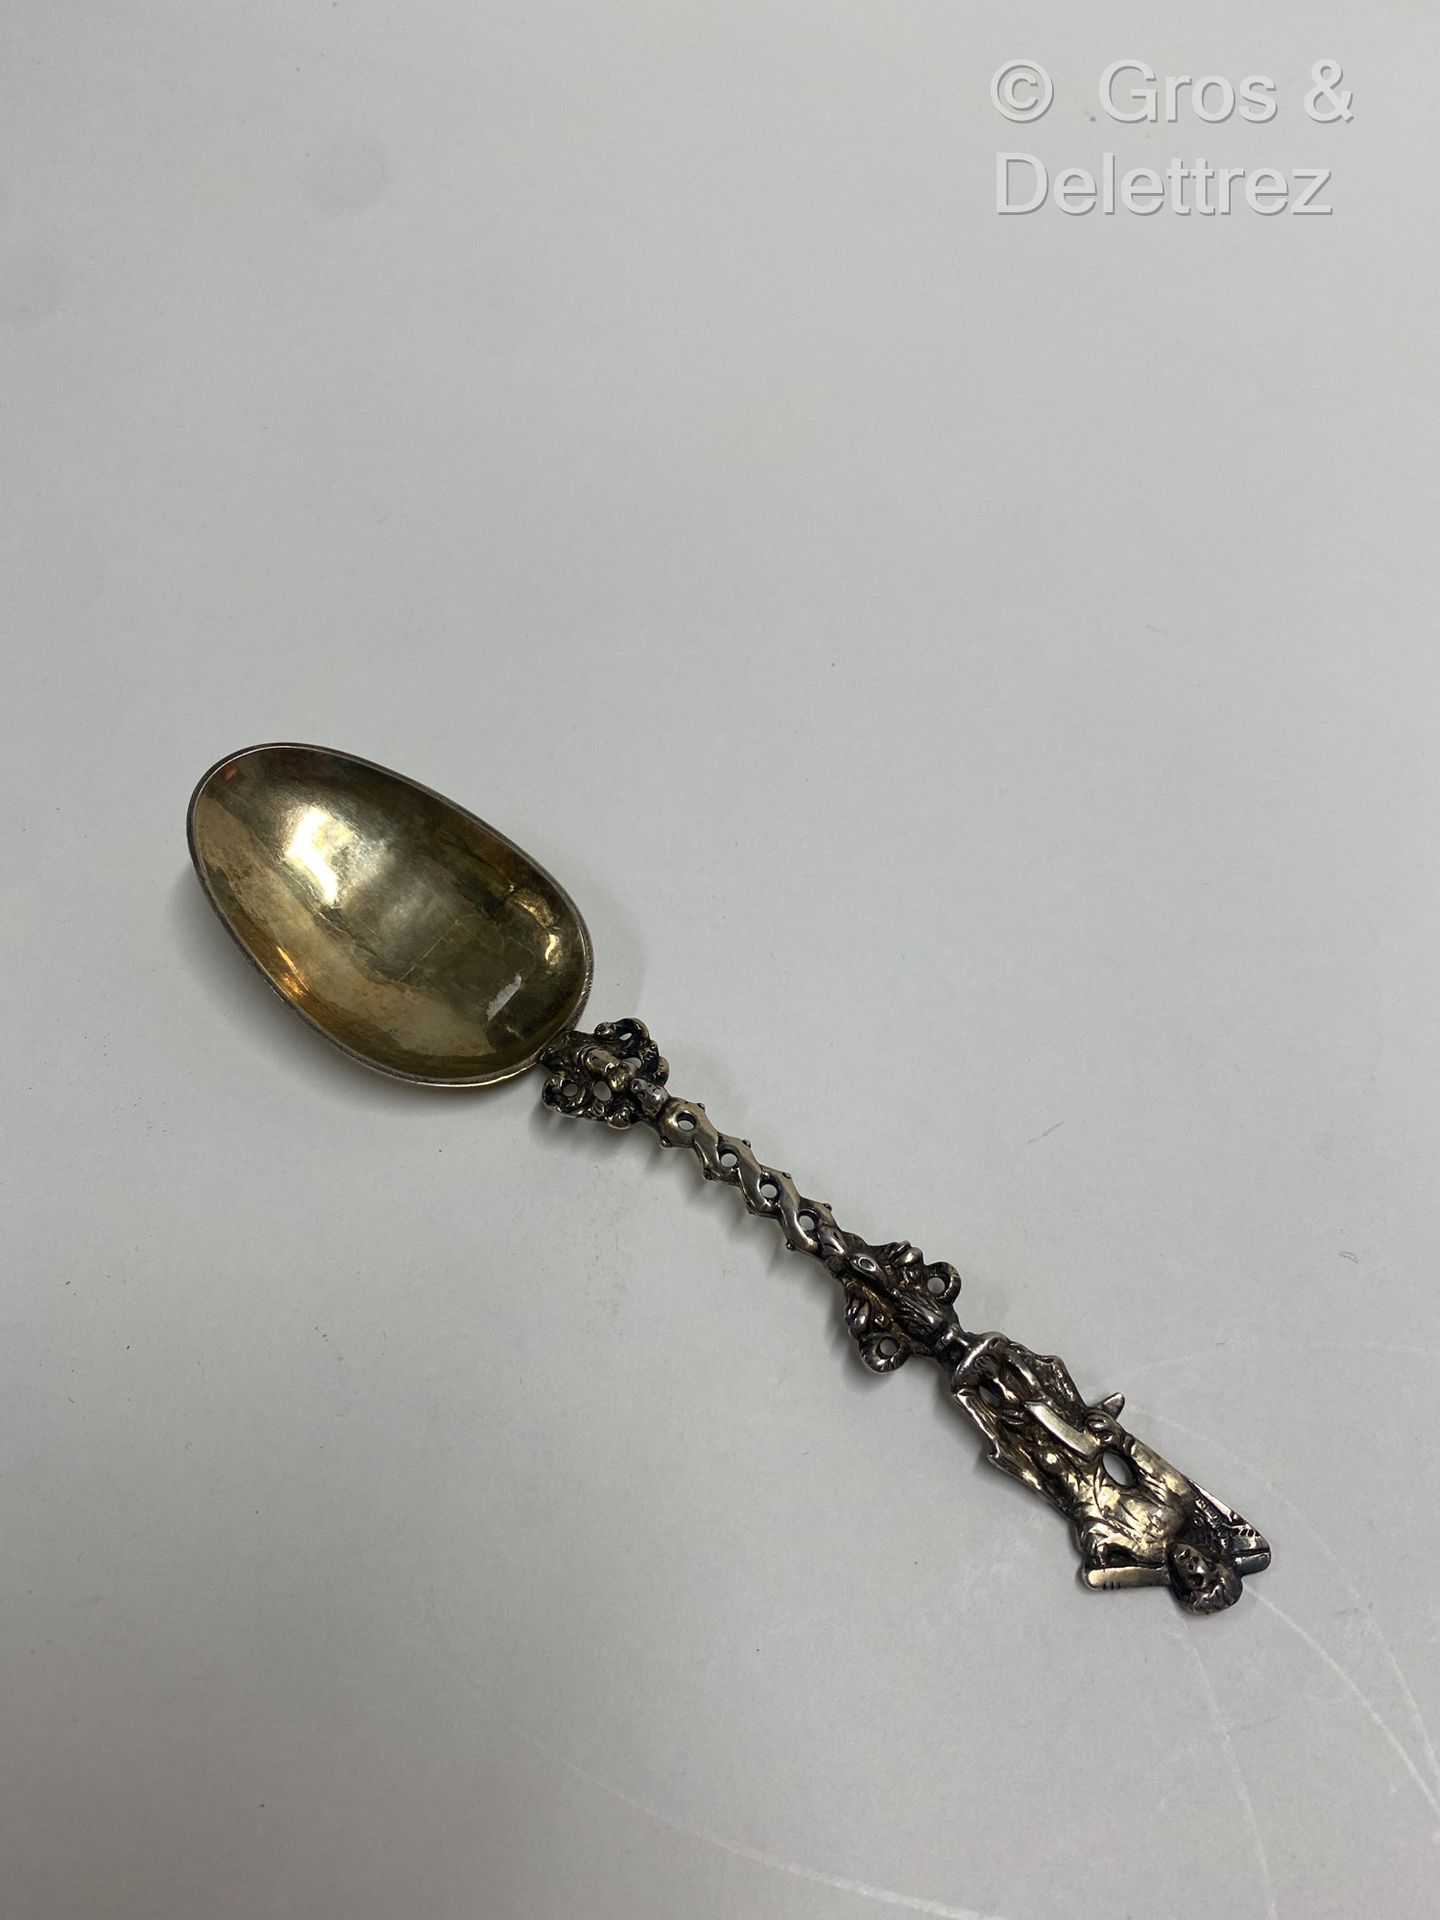 Null (E) 一把银制和镀金的婚礼勺子，扭曲的手柄上有一个小天使的半身像，上面有一个手持方形的人物。

荷兰，19世纪

重量：40克 - 长度：19厘米